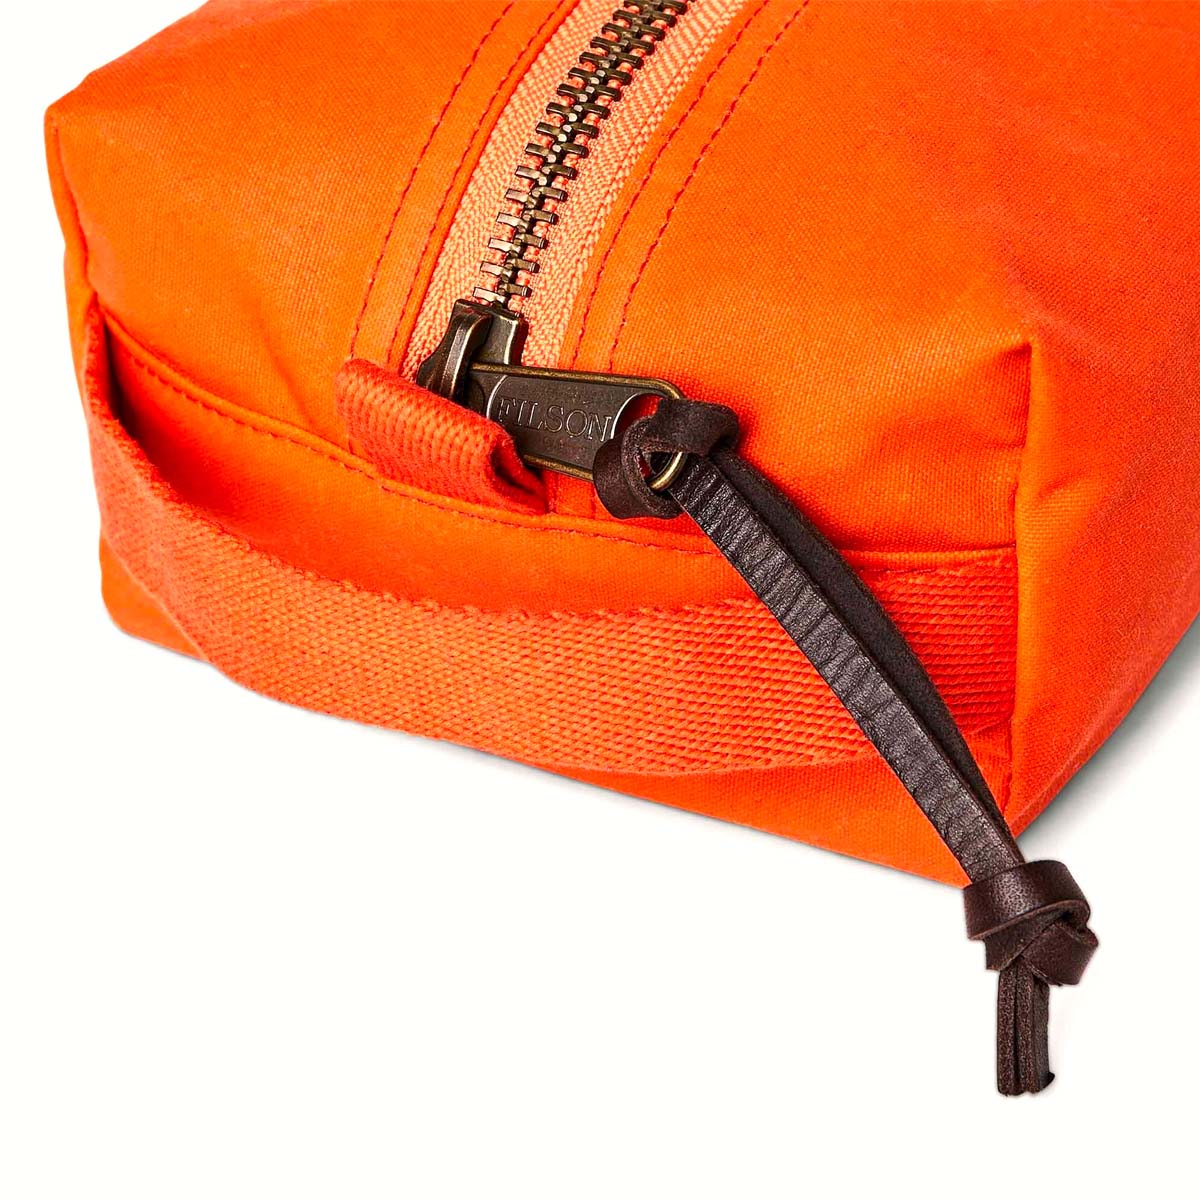 Filson Tin Cloth Travel Kit Flame, eine kompakte, leichte und robuste Kulturtasche aus traditionellen Materialien und modernem Design